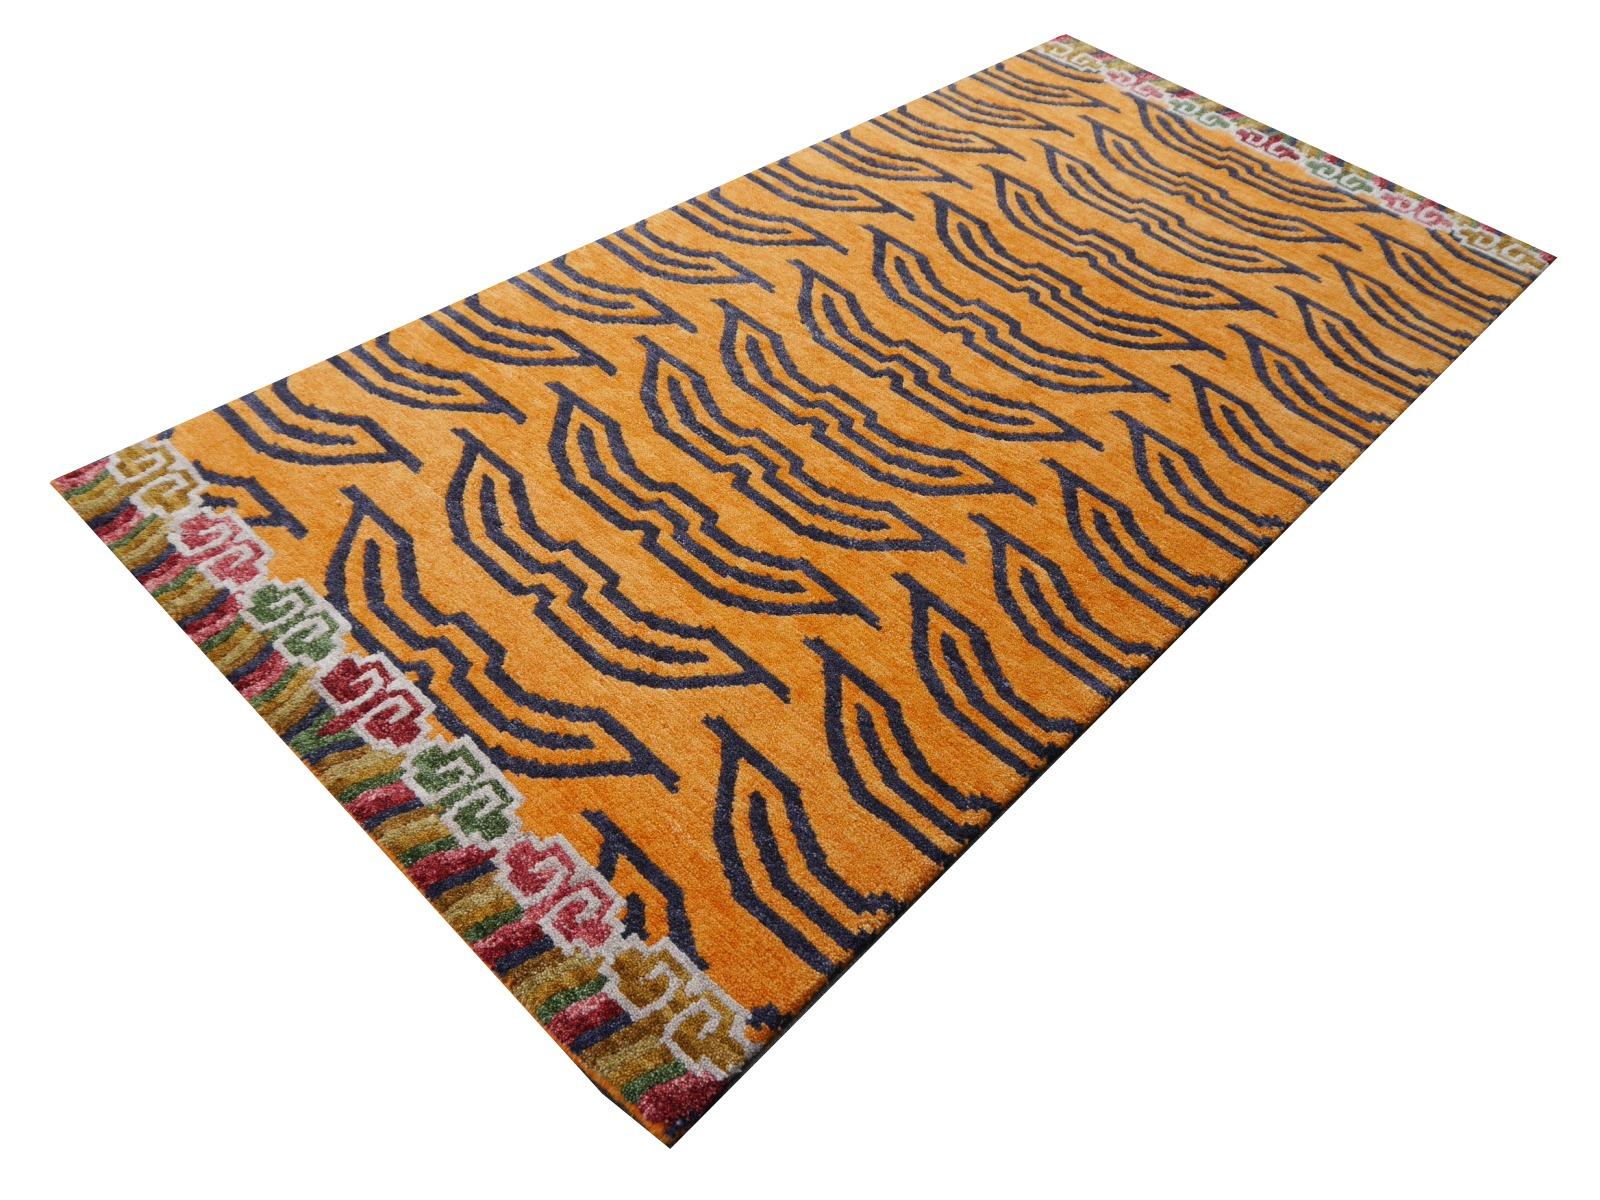 Ein tibetischer Tigerteppich, handgeknüpft in Nepal.

Dieses traditionelle Tiger-Muster findet sich typischerweise auf antiken Teppichen, die Khaden genannt werden. Er beschreibt einen kleinen Teppich von etwa 3 x 6 Fuß, der in Tibet zur